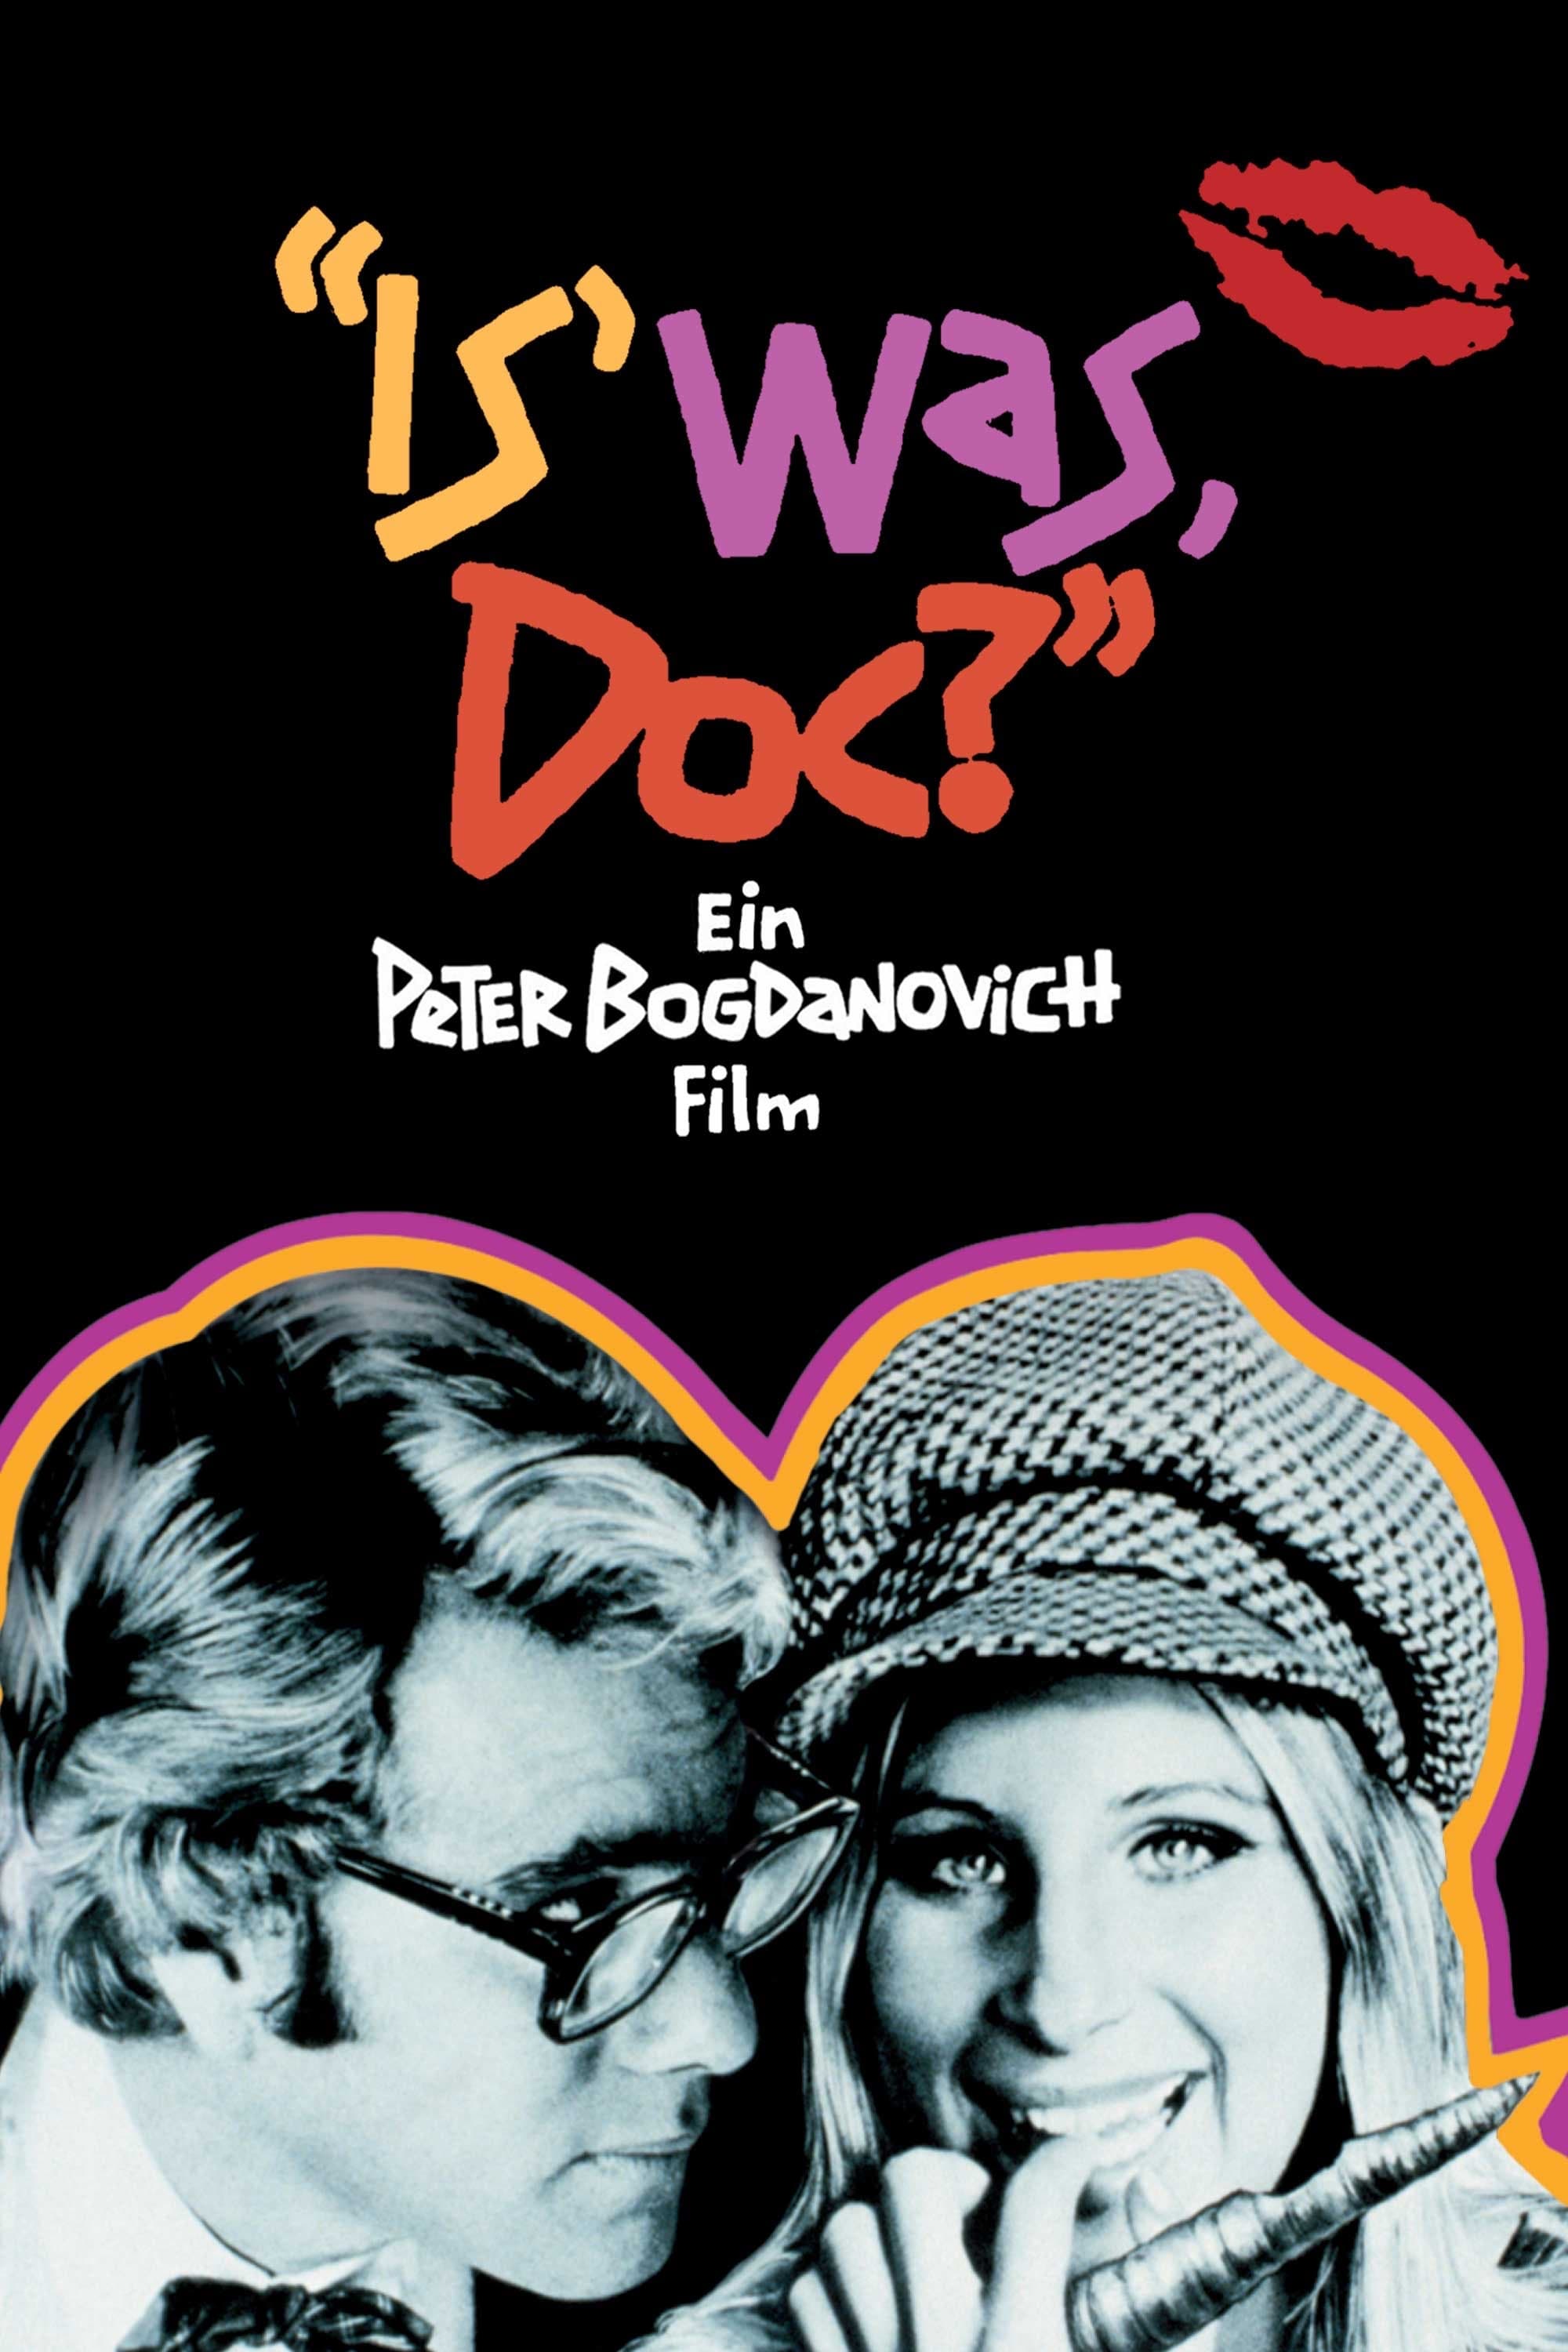 Plakat von "Is' was, Doc"